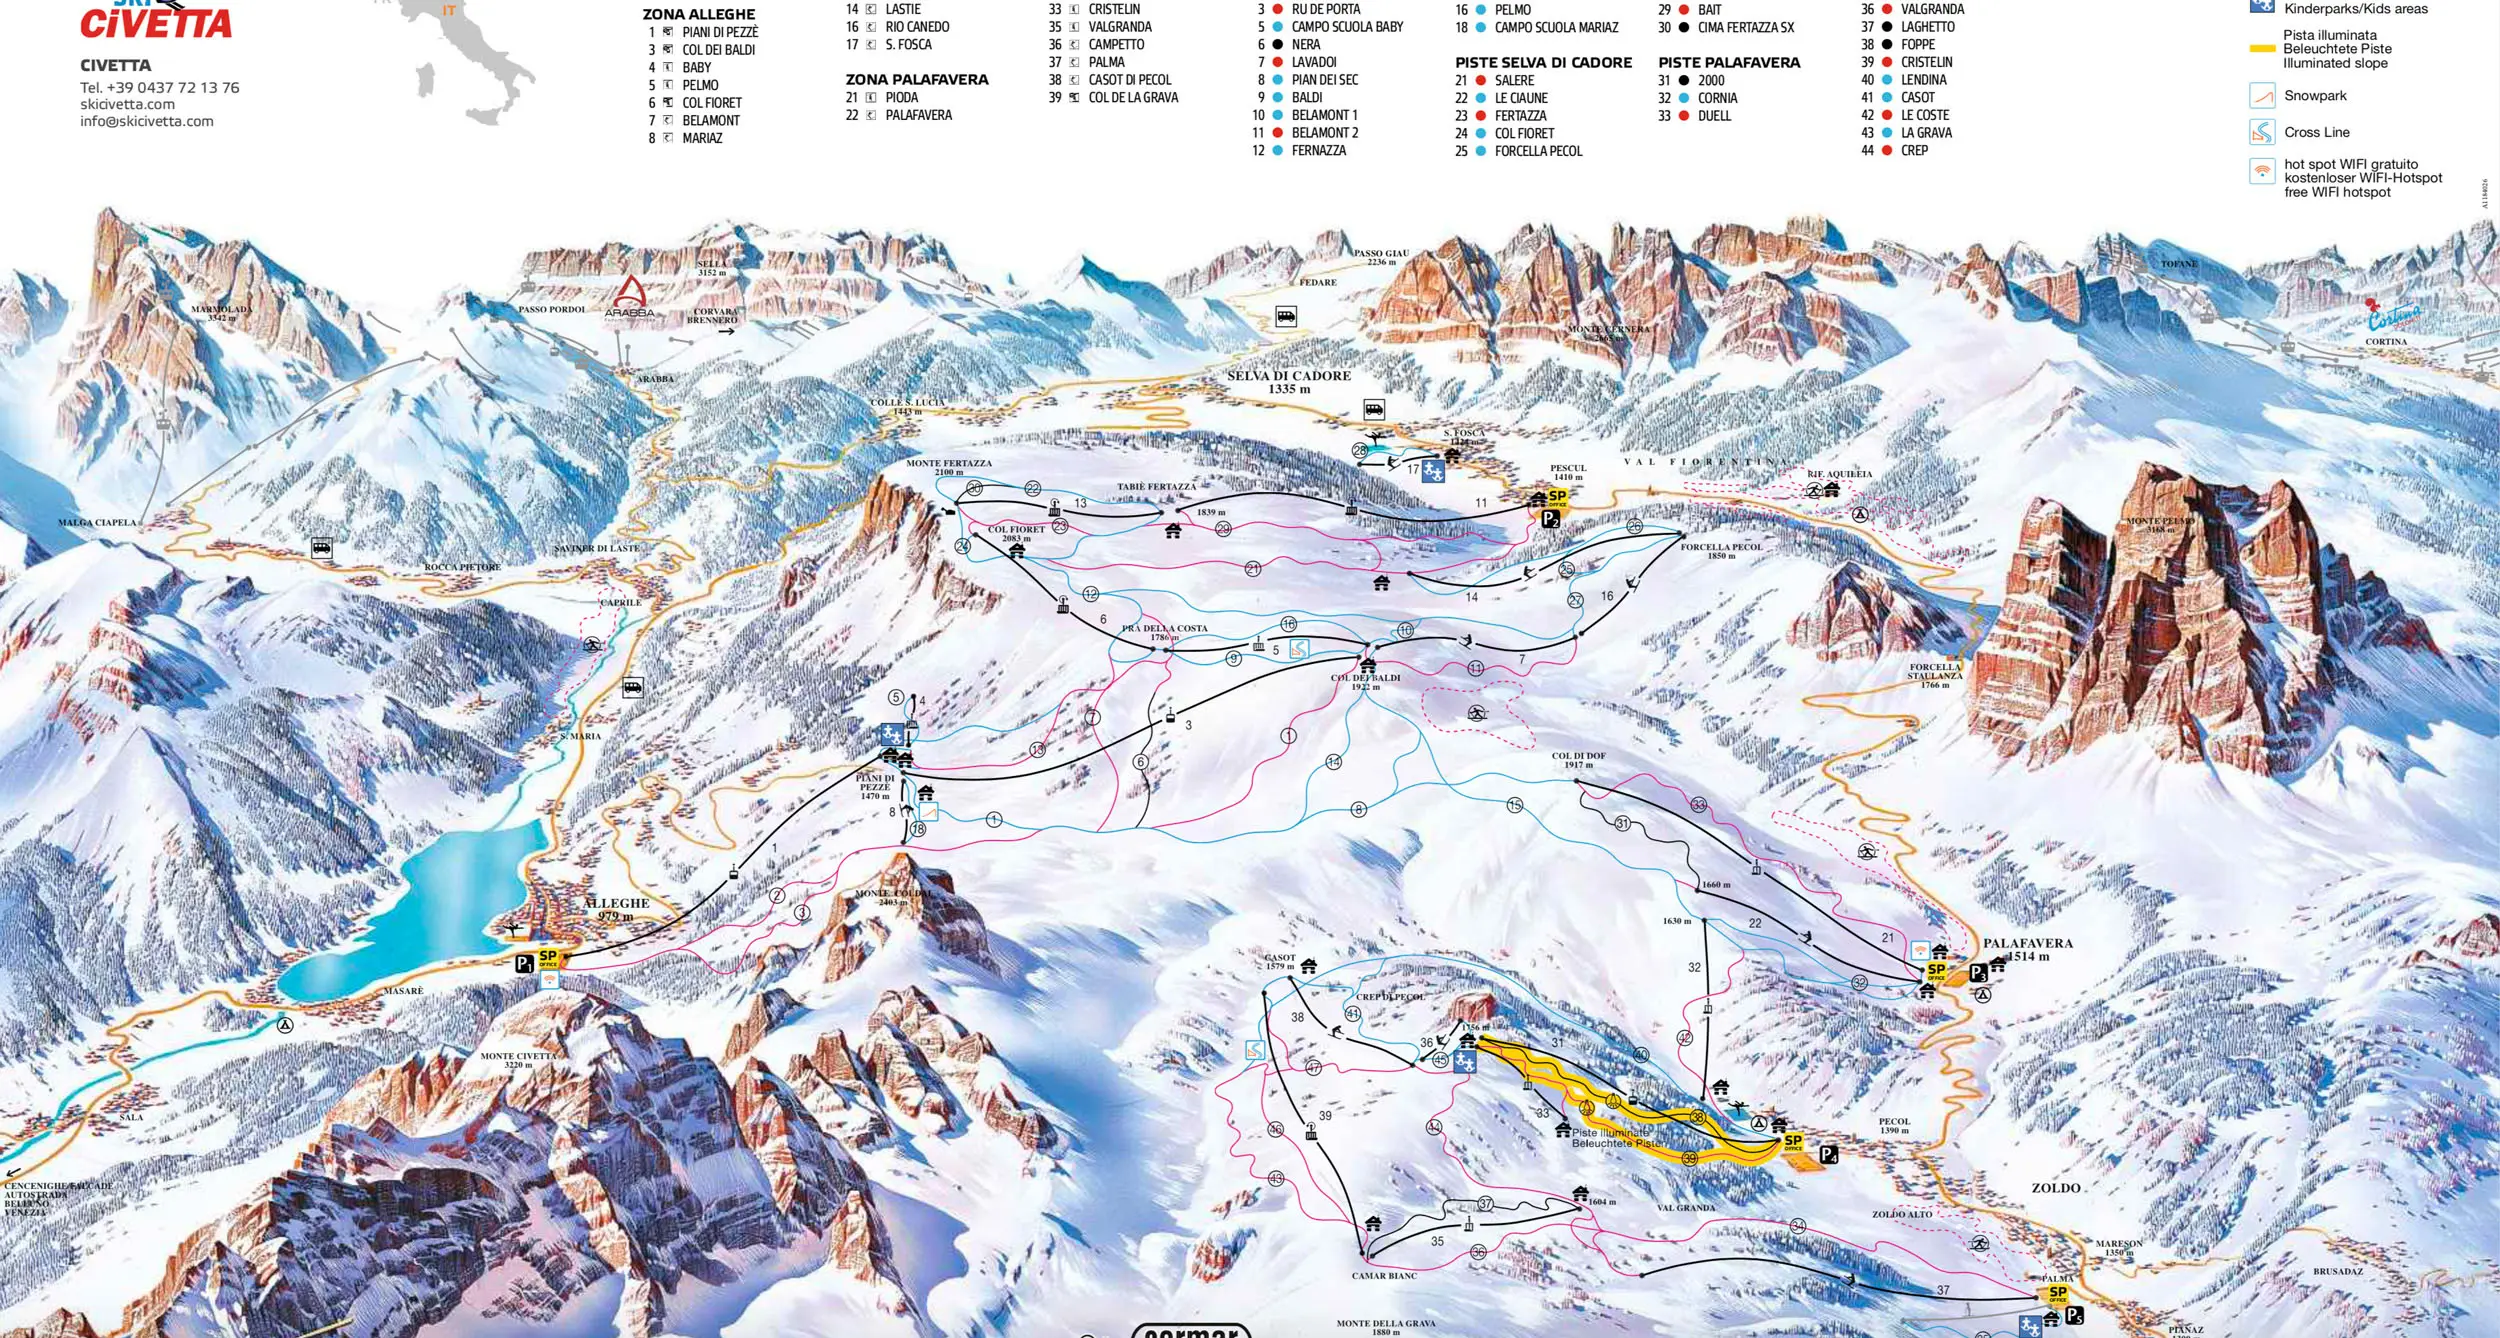 Civeatta ski map